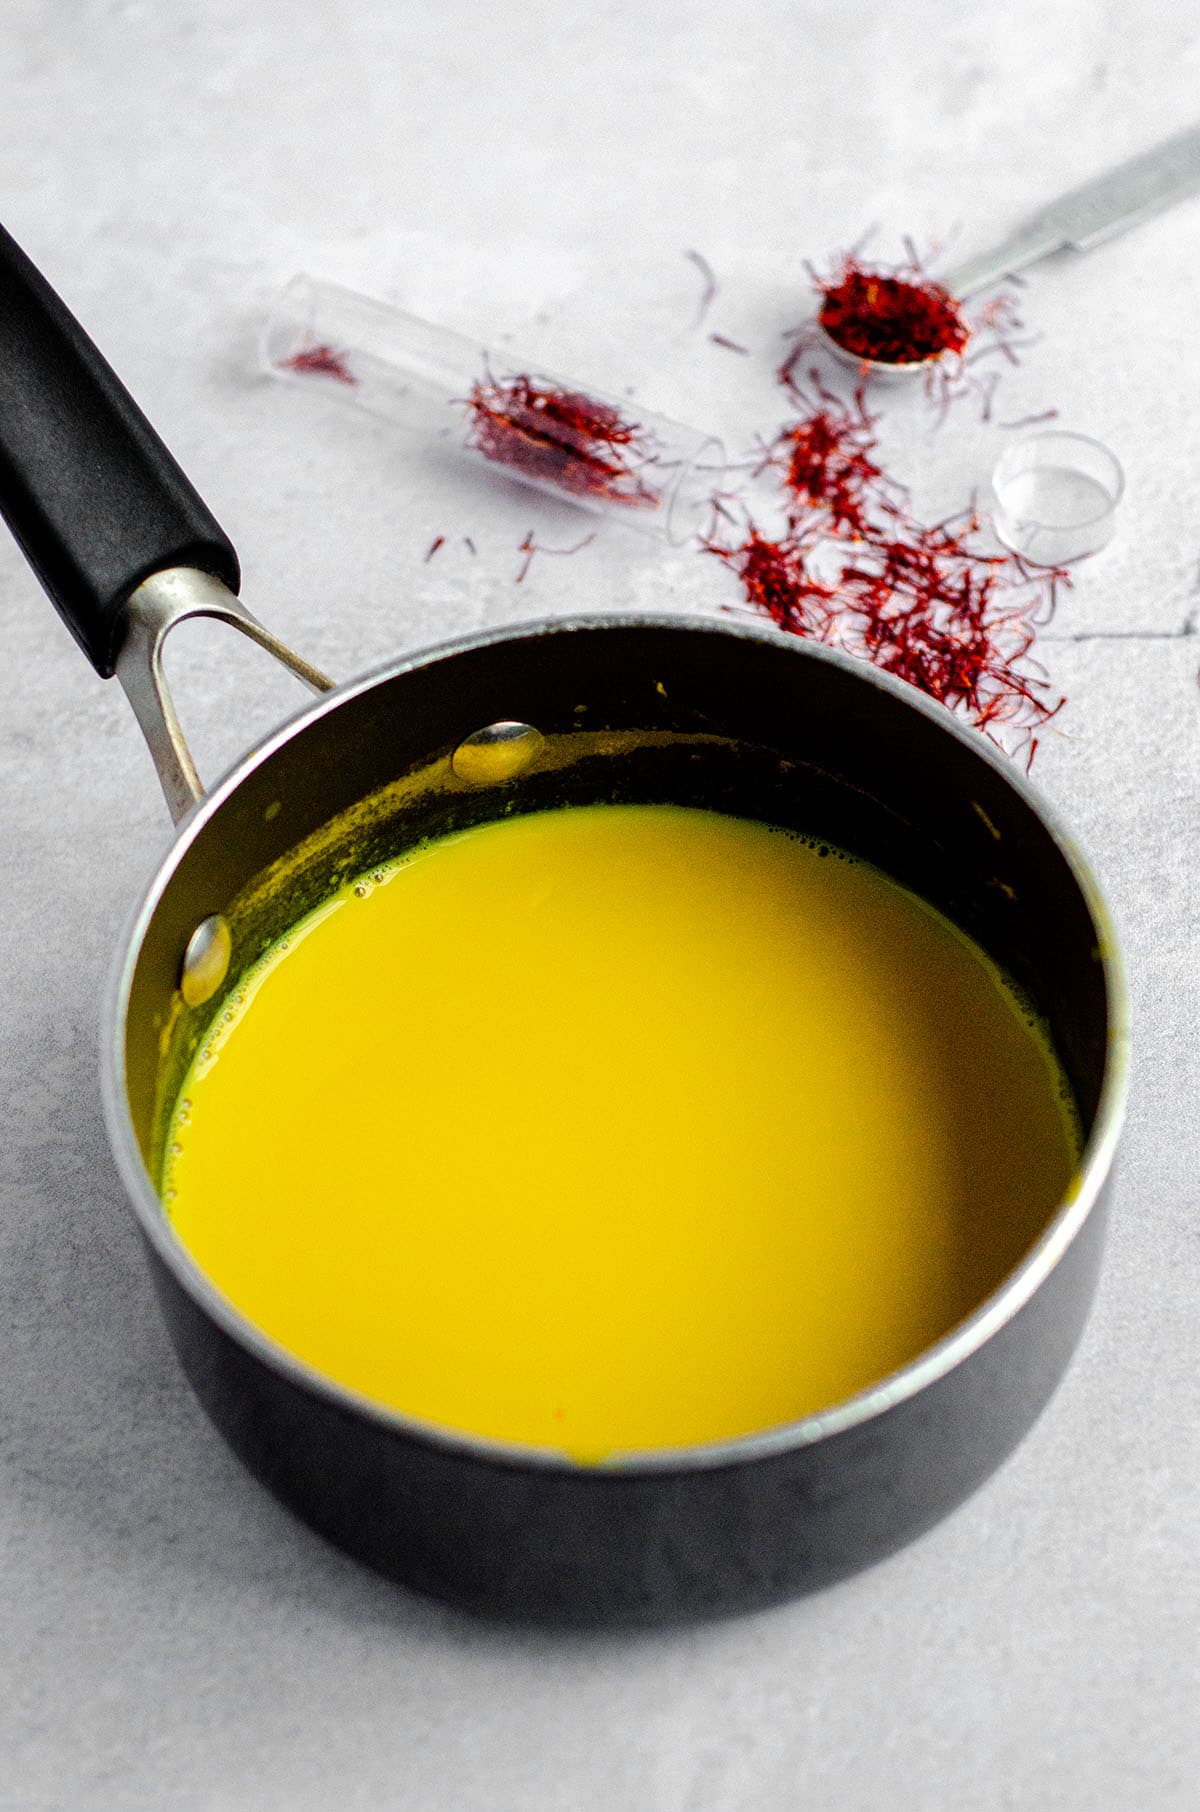 saffron-infused milk in a saucepan